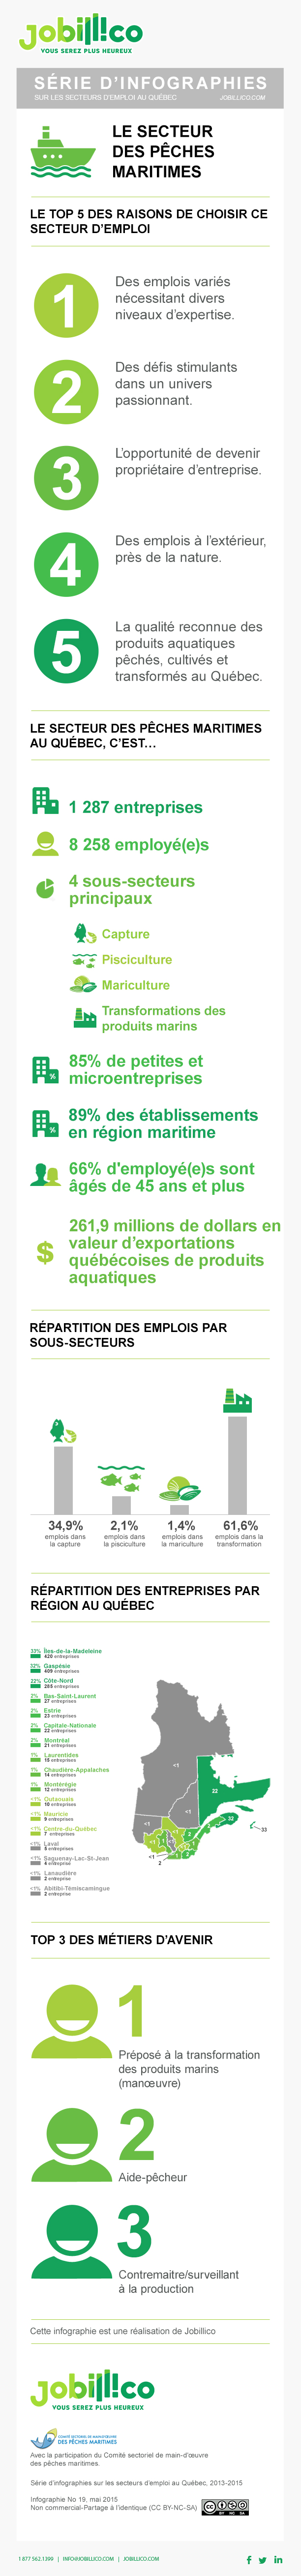 Infographie : Les chiffes de l'emploi dans le secteur des pêches maritimes au Québec